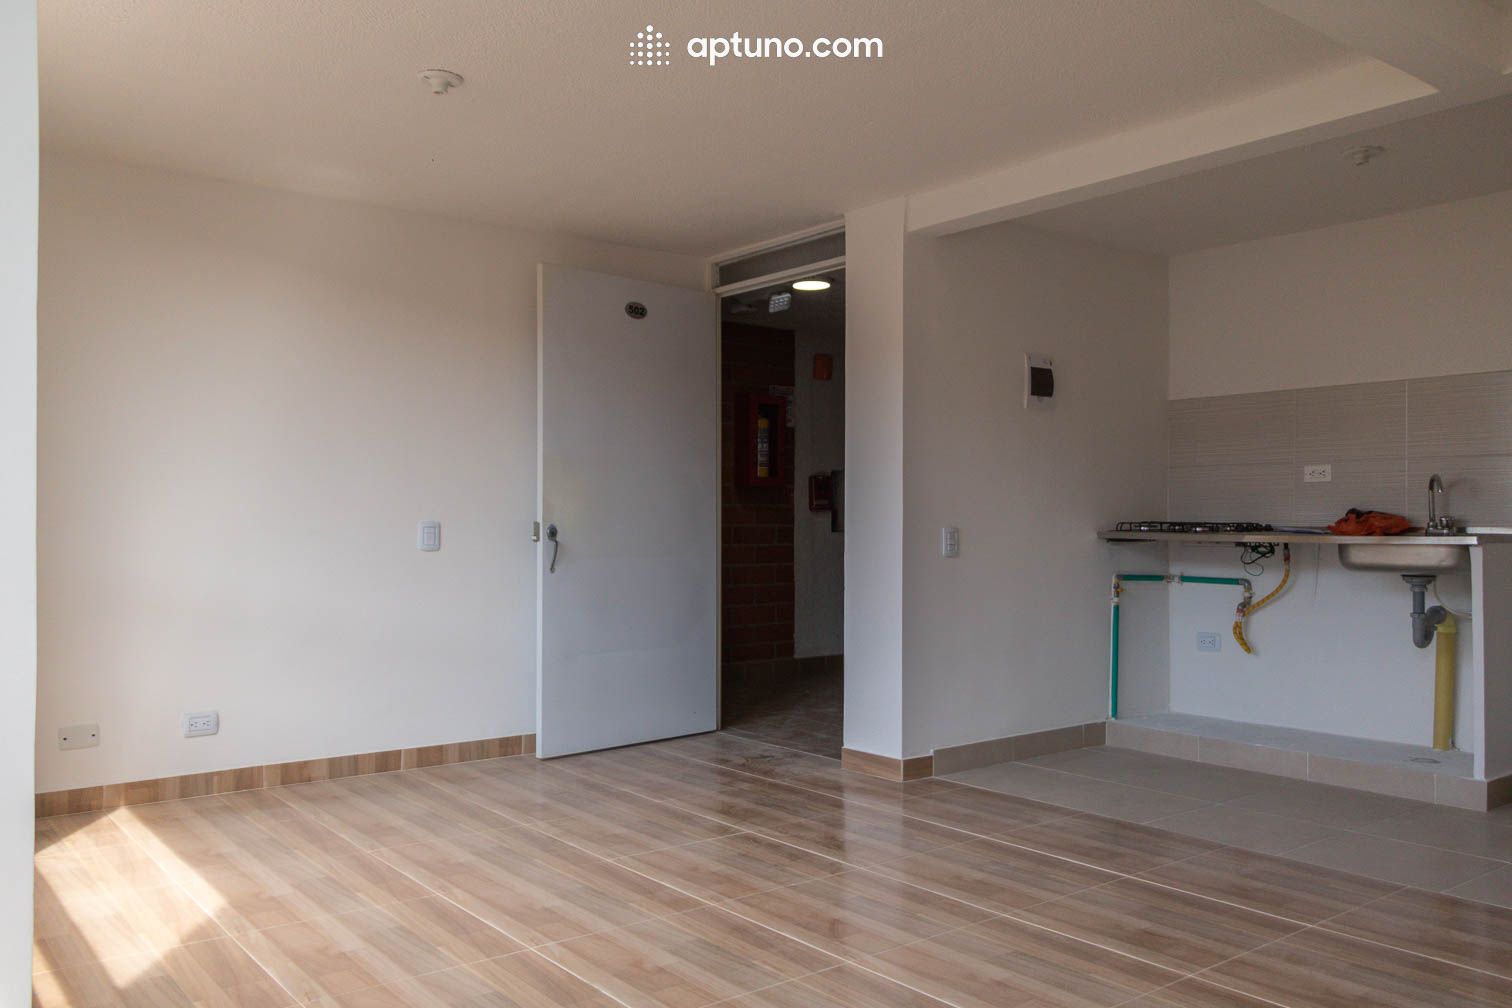 Apartamento en arriendo Corregimiento Norte 47 m² - $ 700.000,00